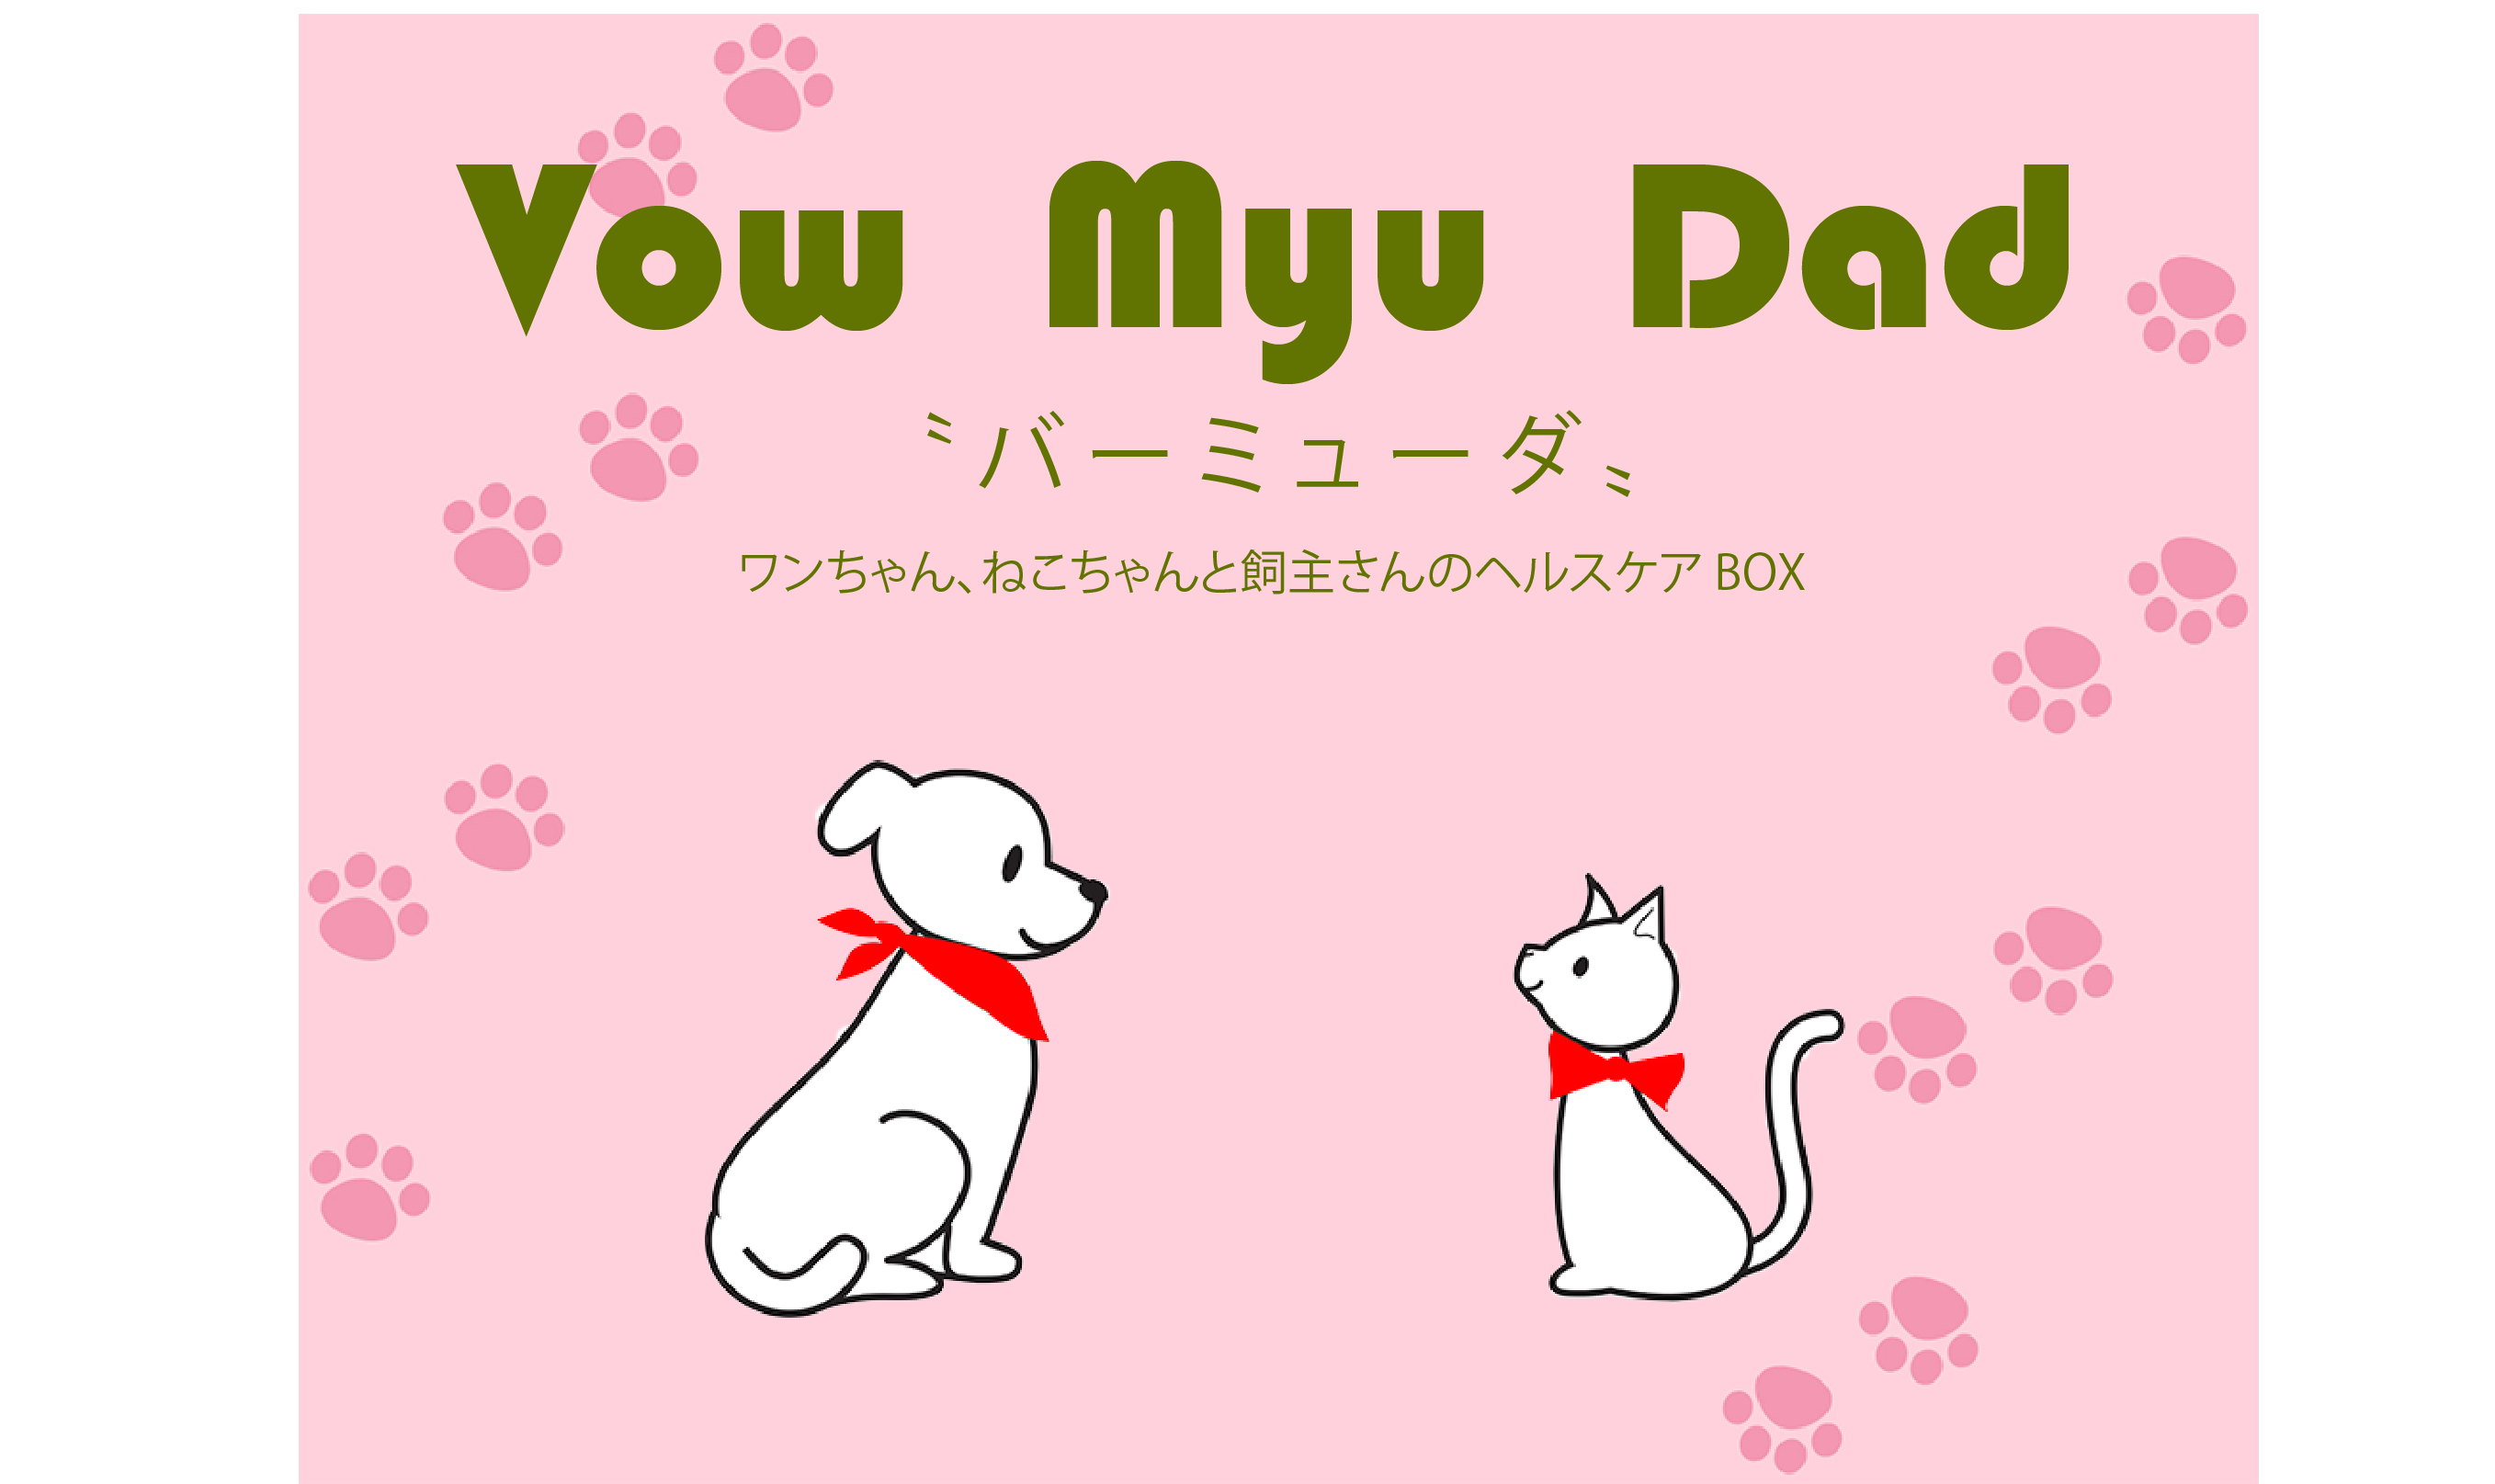 Vow Myu Dad